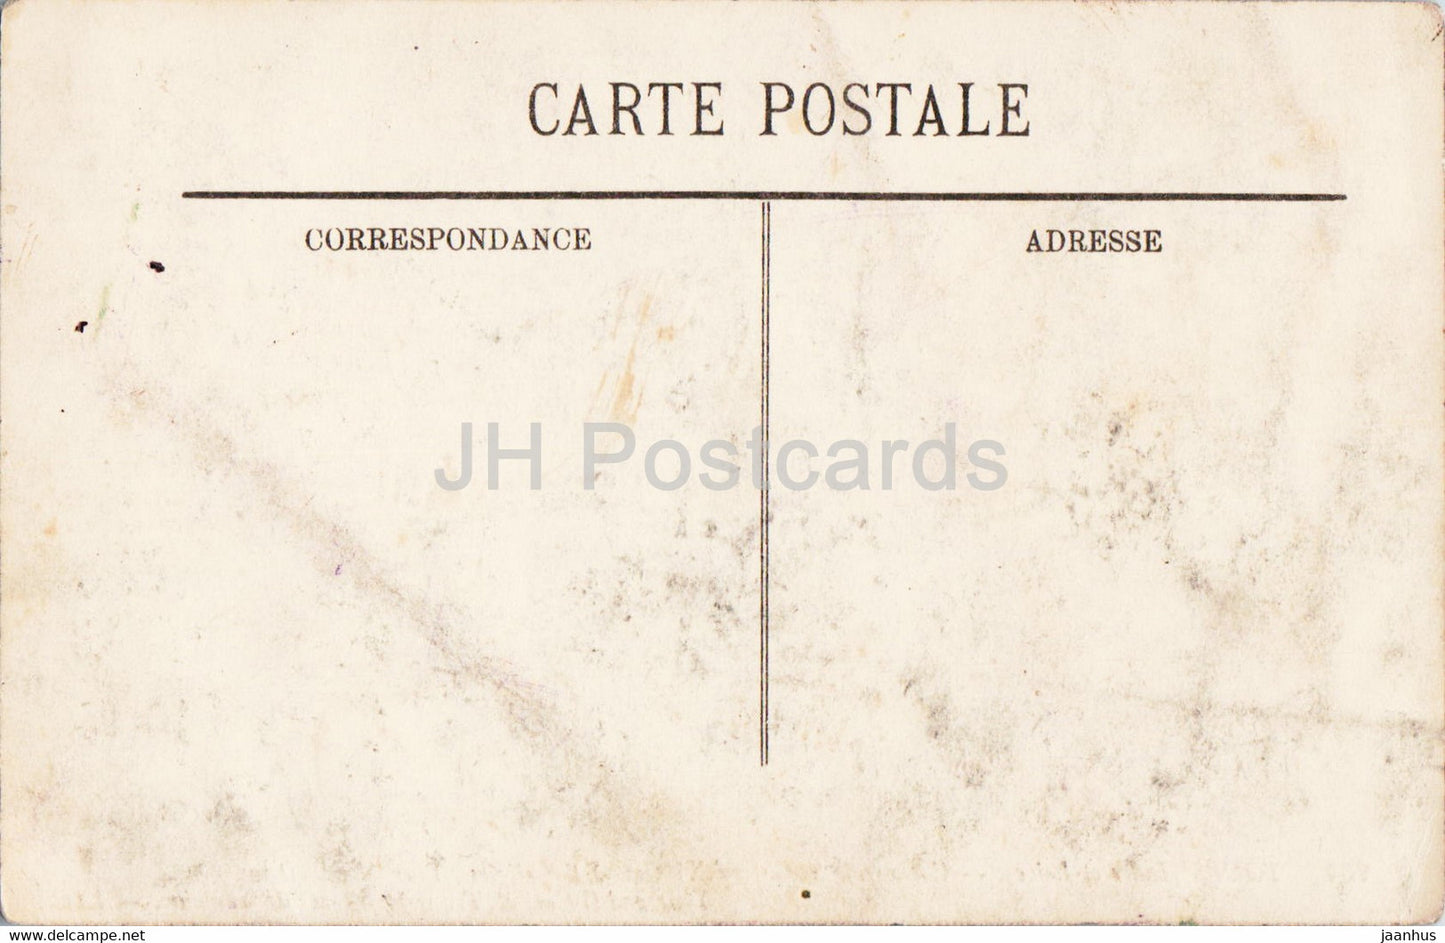 Tours - Cathédrale St Gatien - Tour Nord - Tour Sud - Transept - cathédrale - 264 - carte postale ancienne - France - inutilisée